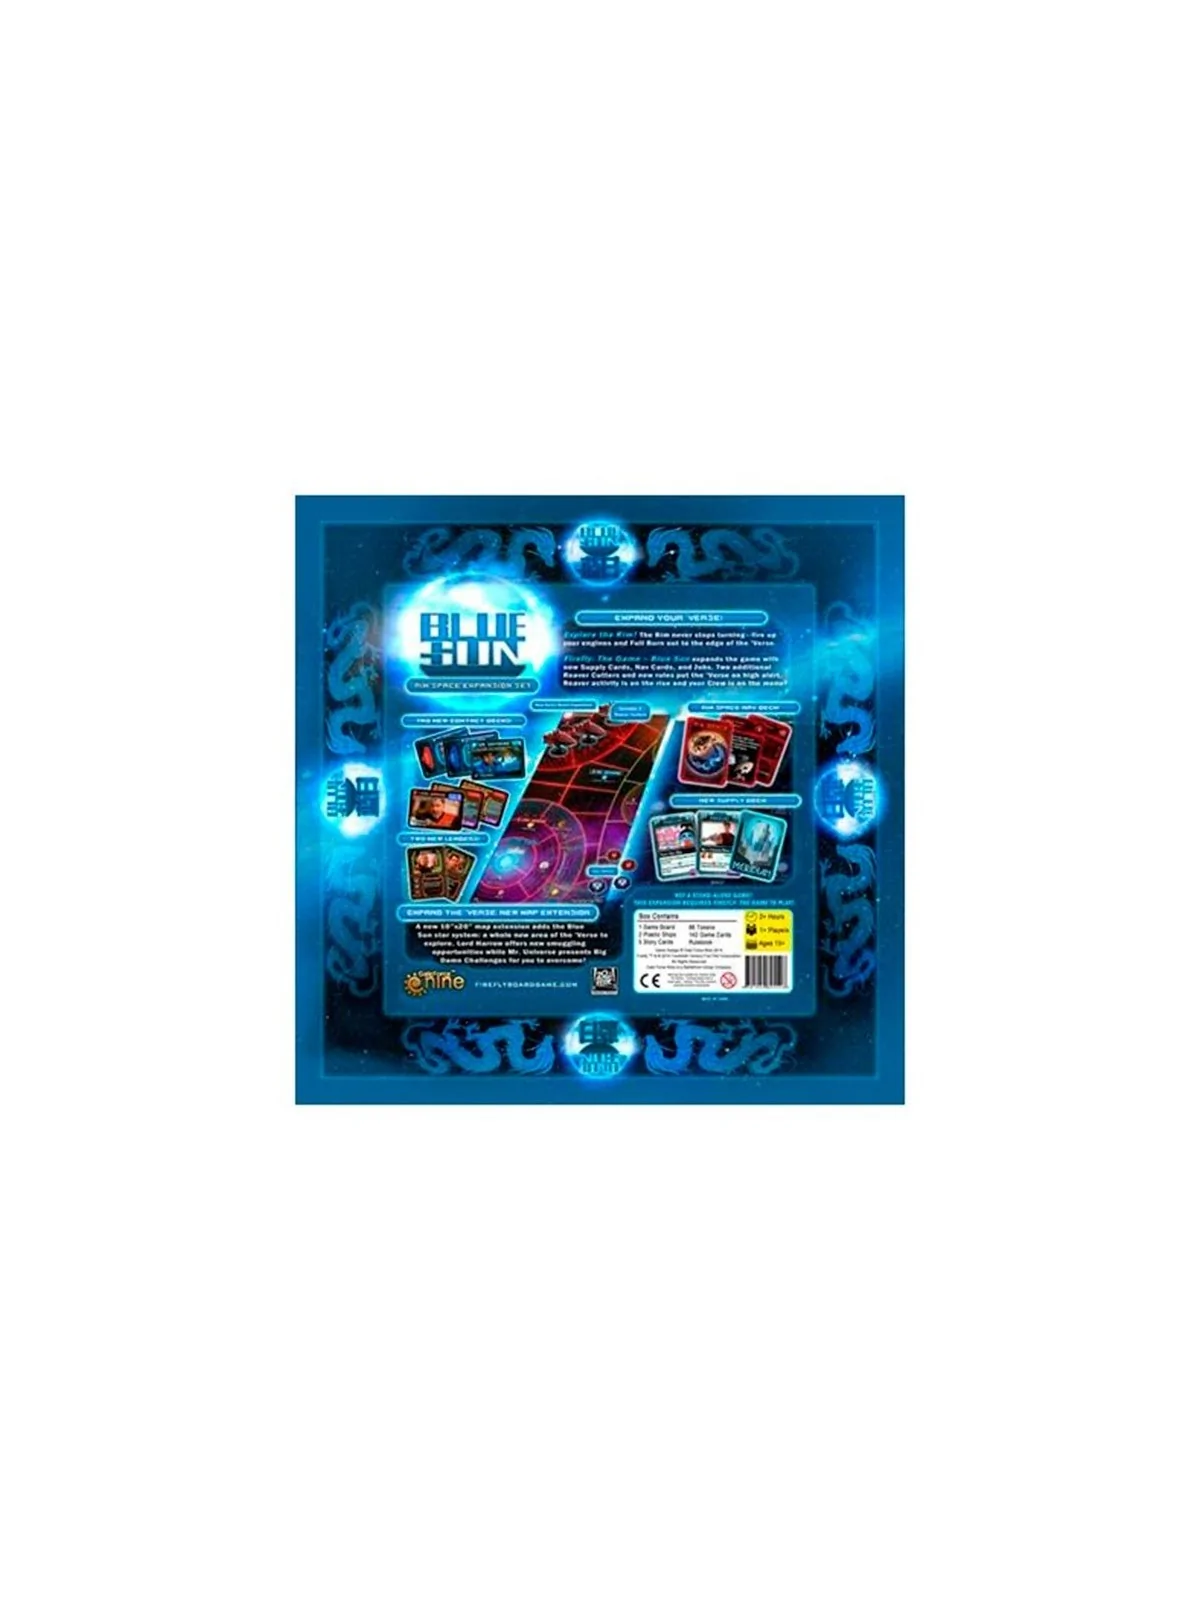 Comprar Firefly: The Game - Blue Sun (Inglés) barato al mejor precio 3